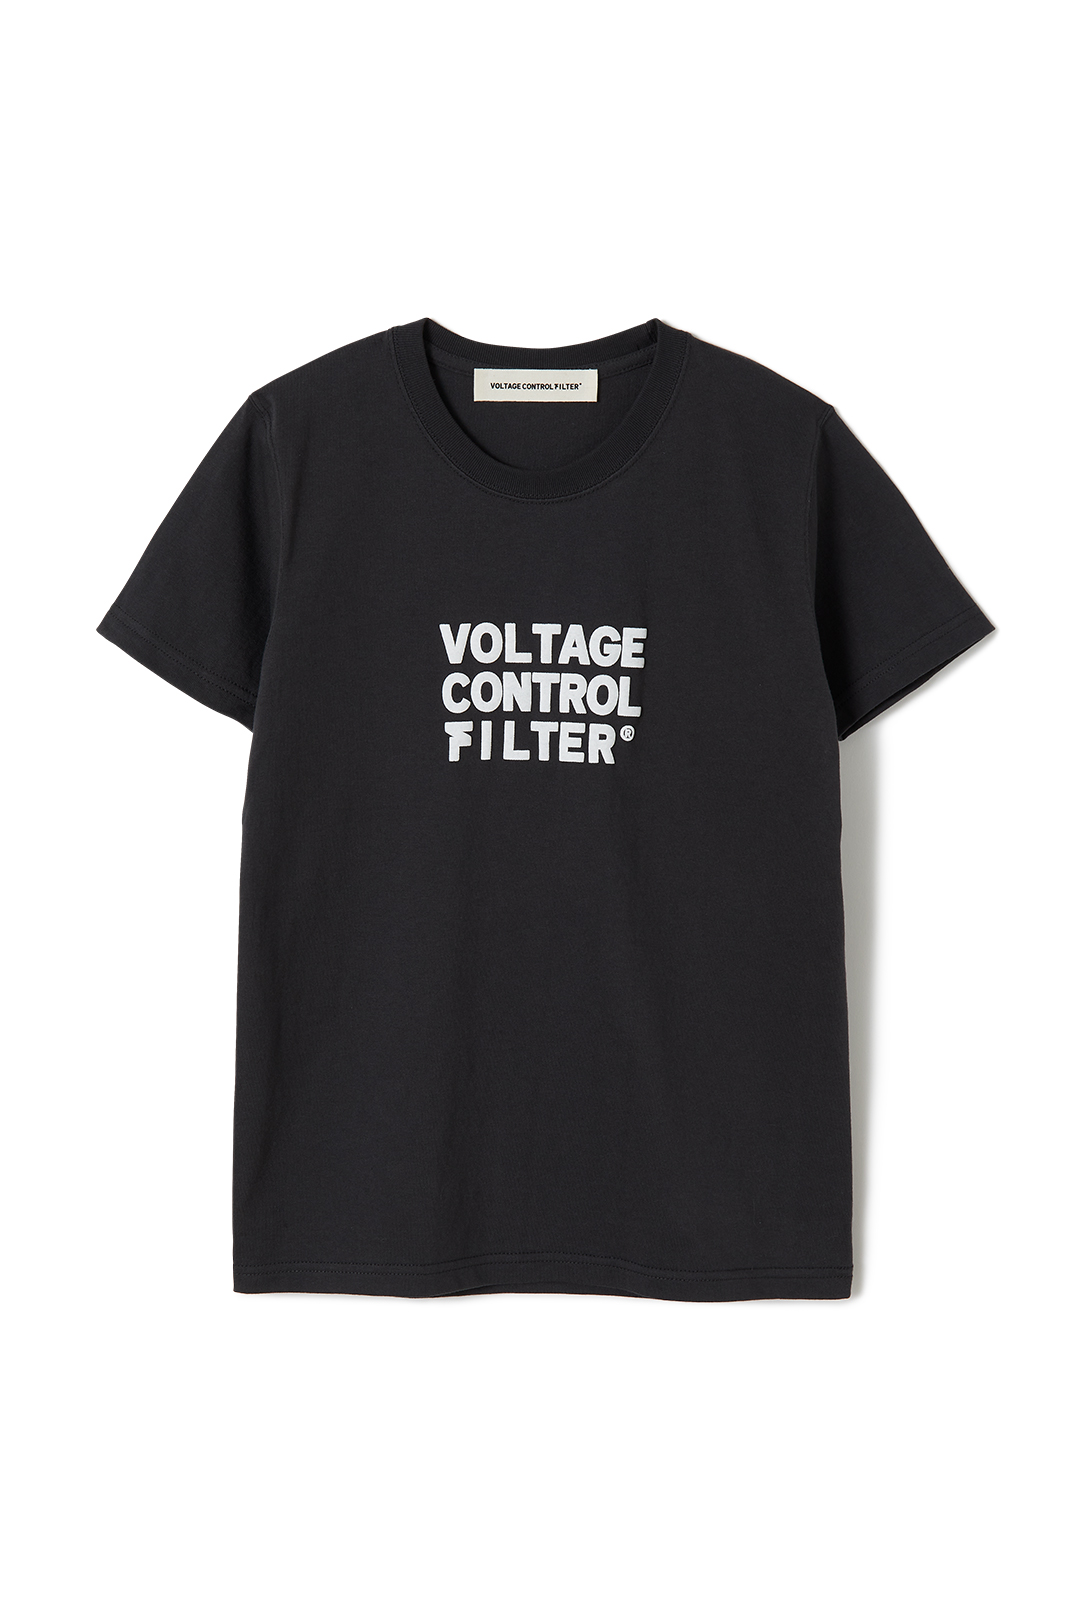 VOLTAGE CONTROL FILTER シャツ 黒